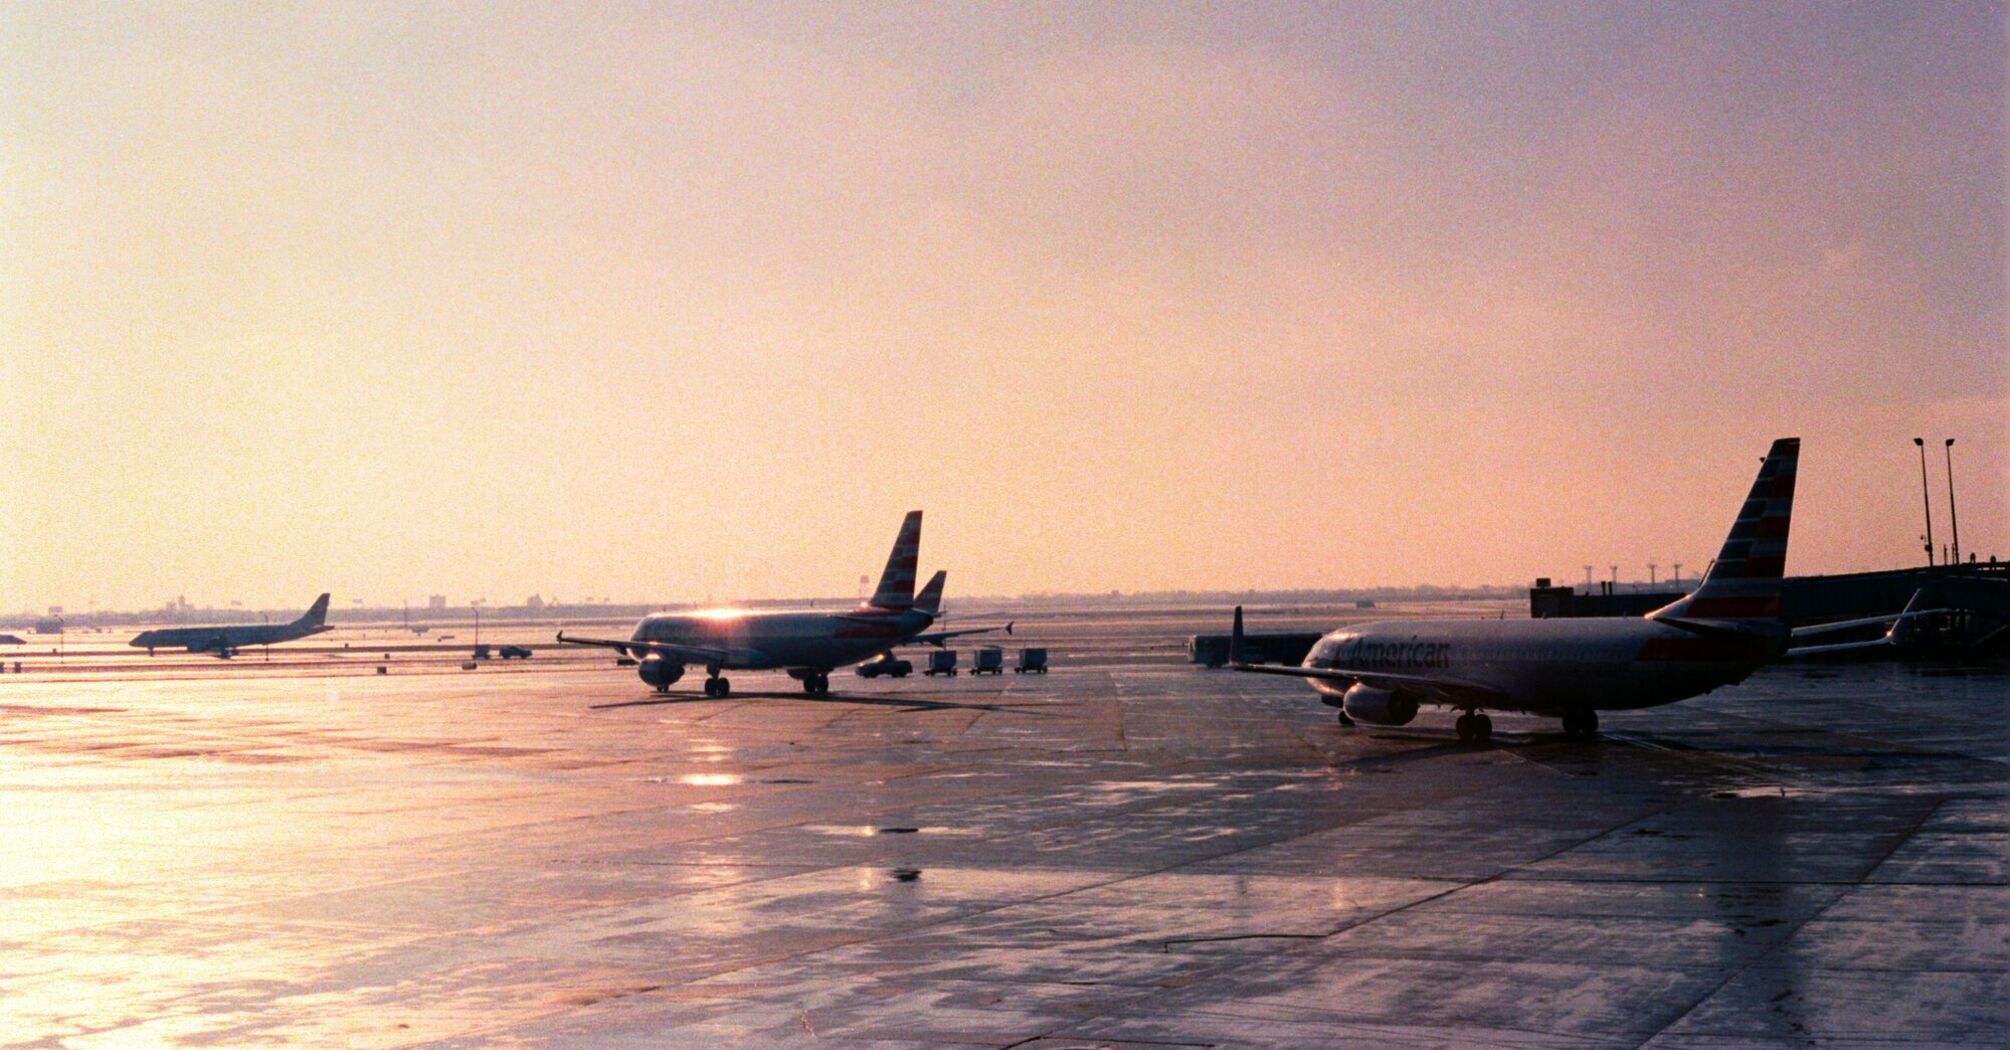 Airport runway duskview